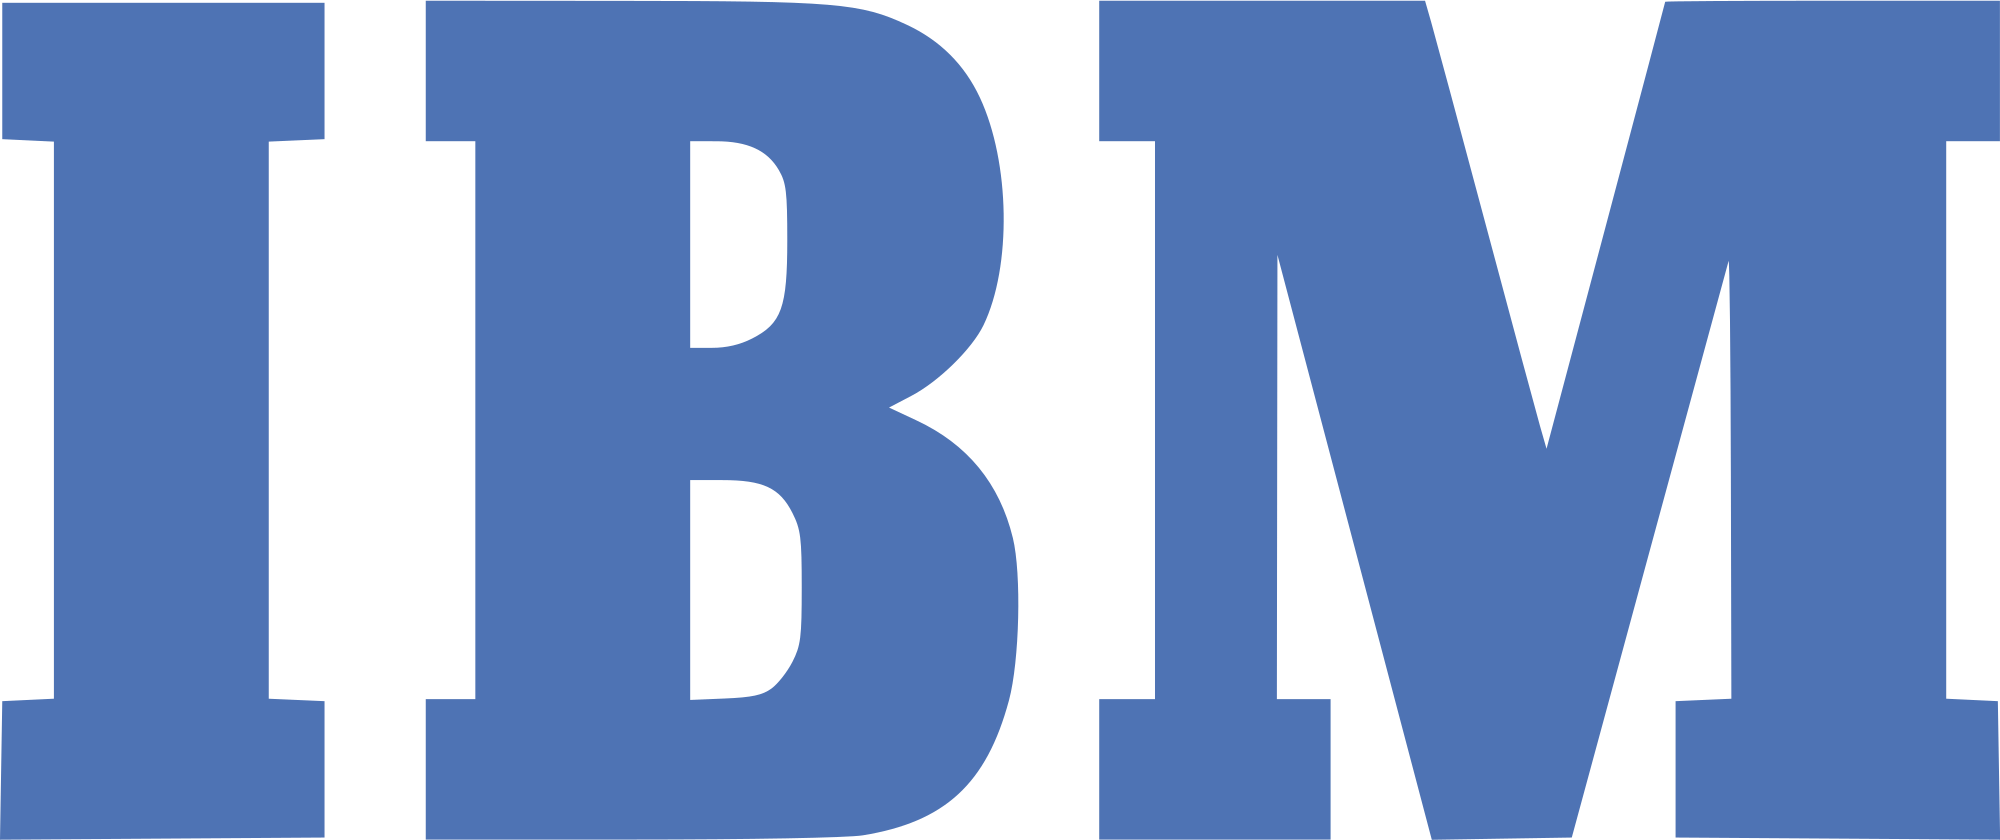 Айбиэм. Фирма ИБМ. IBM лого. IBM компания. IBM товарный знак.